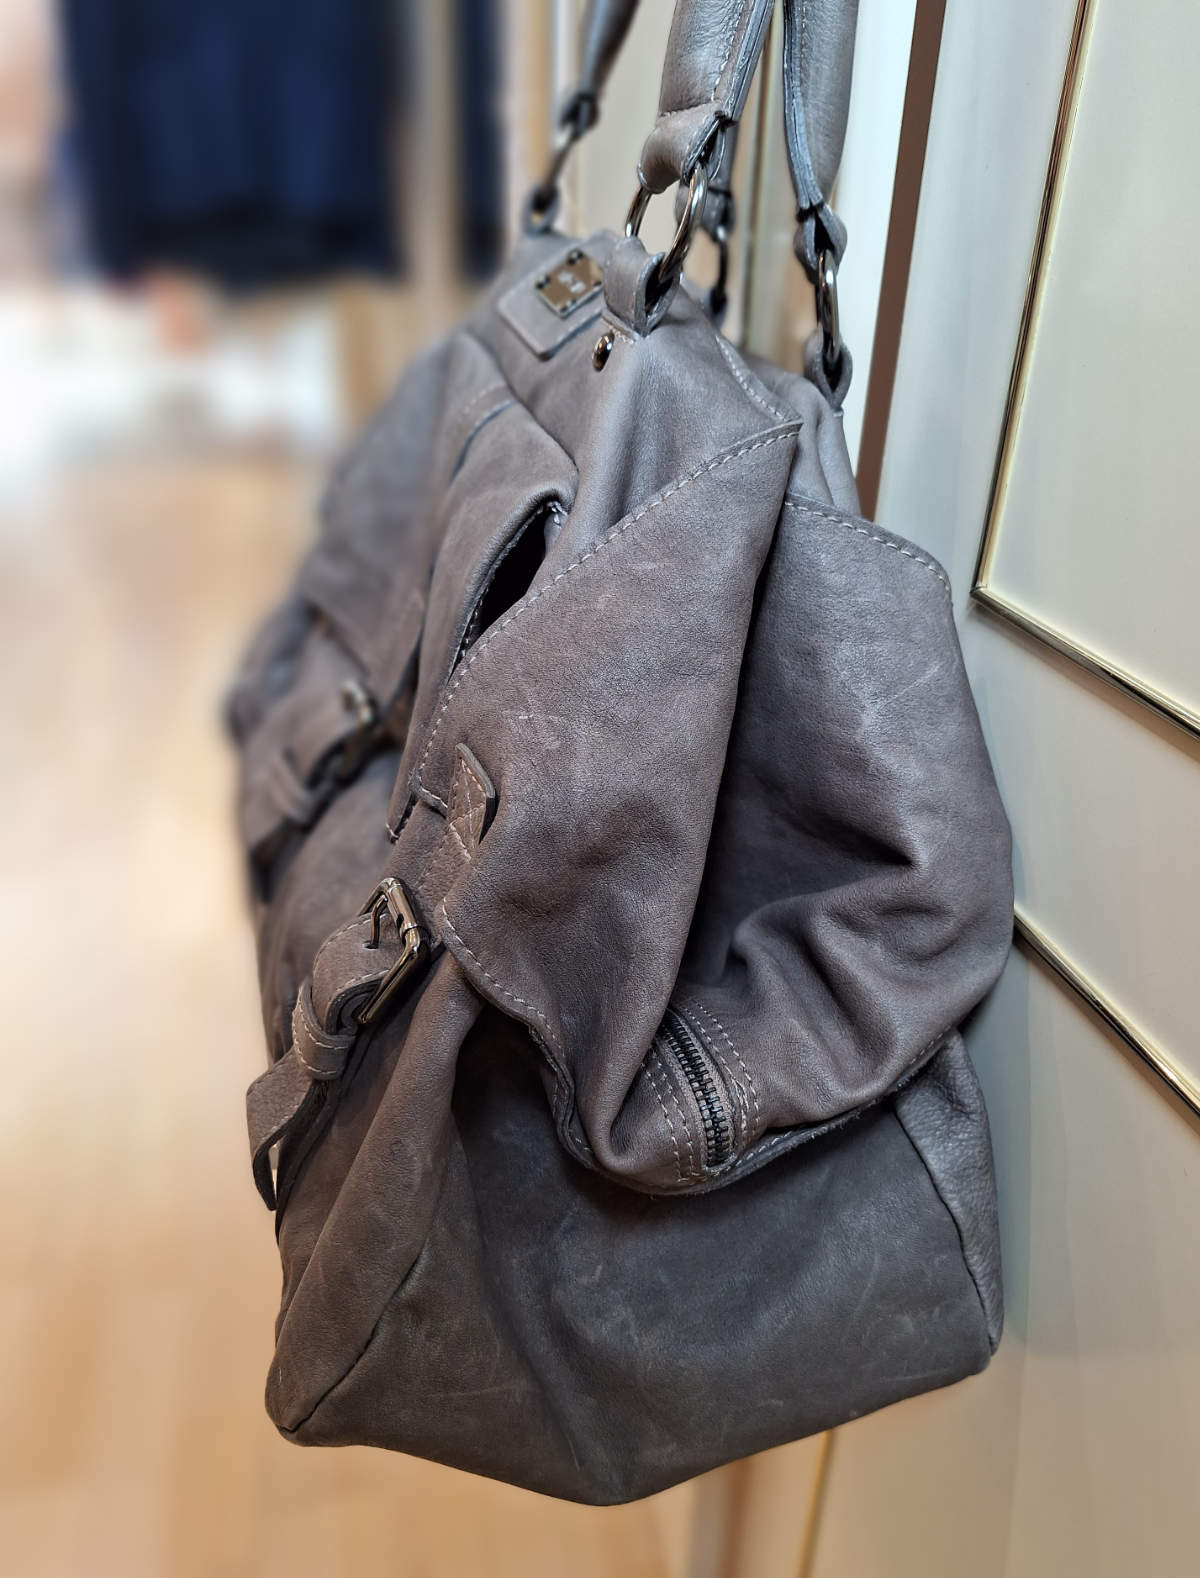 Marccain Tasche in grau,  aus Leder, auch Shopper genannt, für Damen, seitlich.